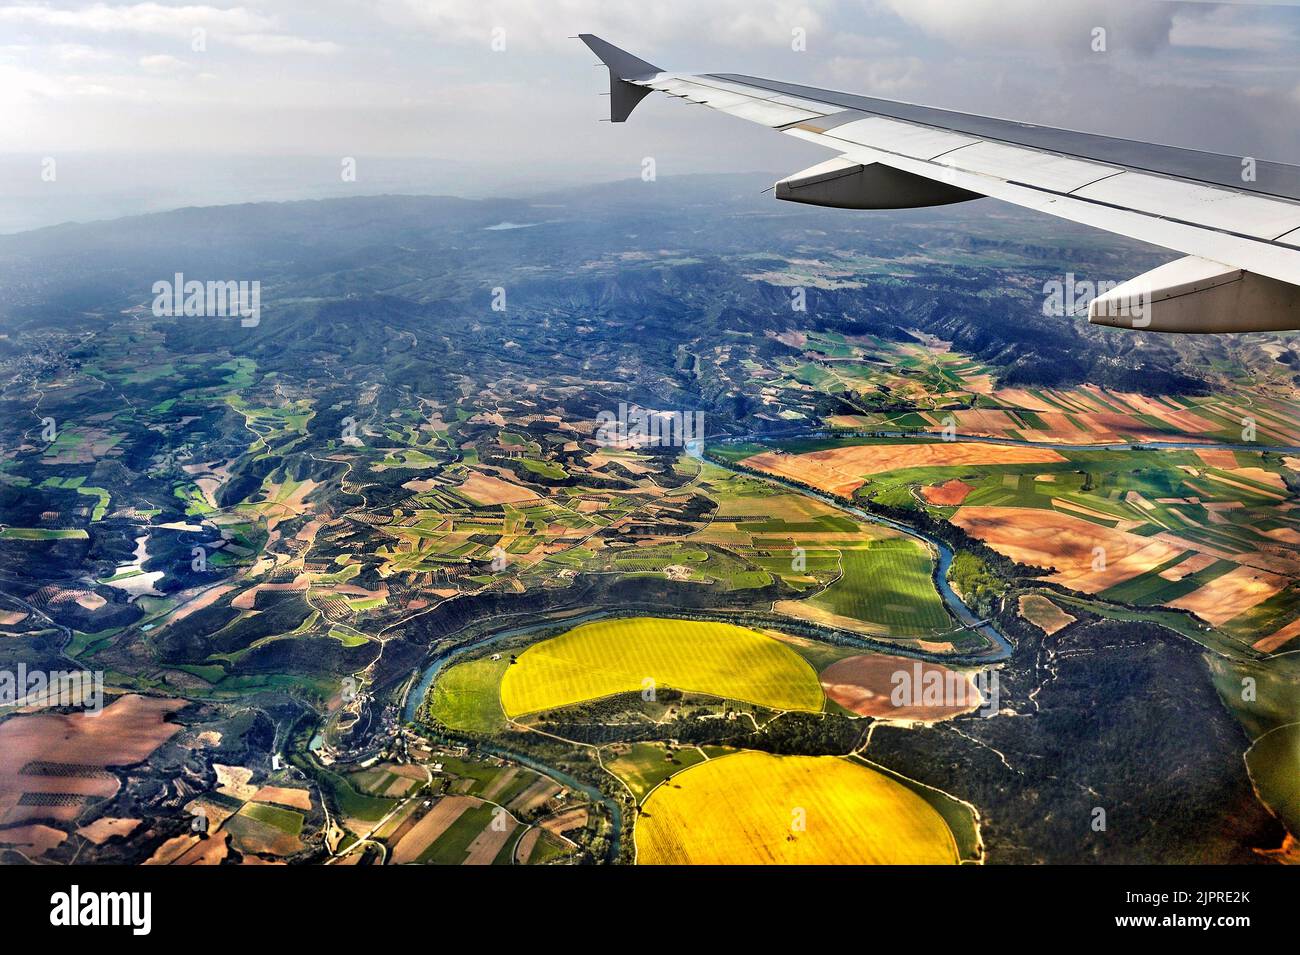 Flug Frankfurt-Madrid, spanische Felder und Wälder unter dem Flügel, Spanien Stockfoto